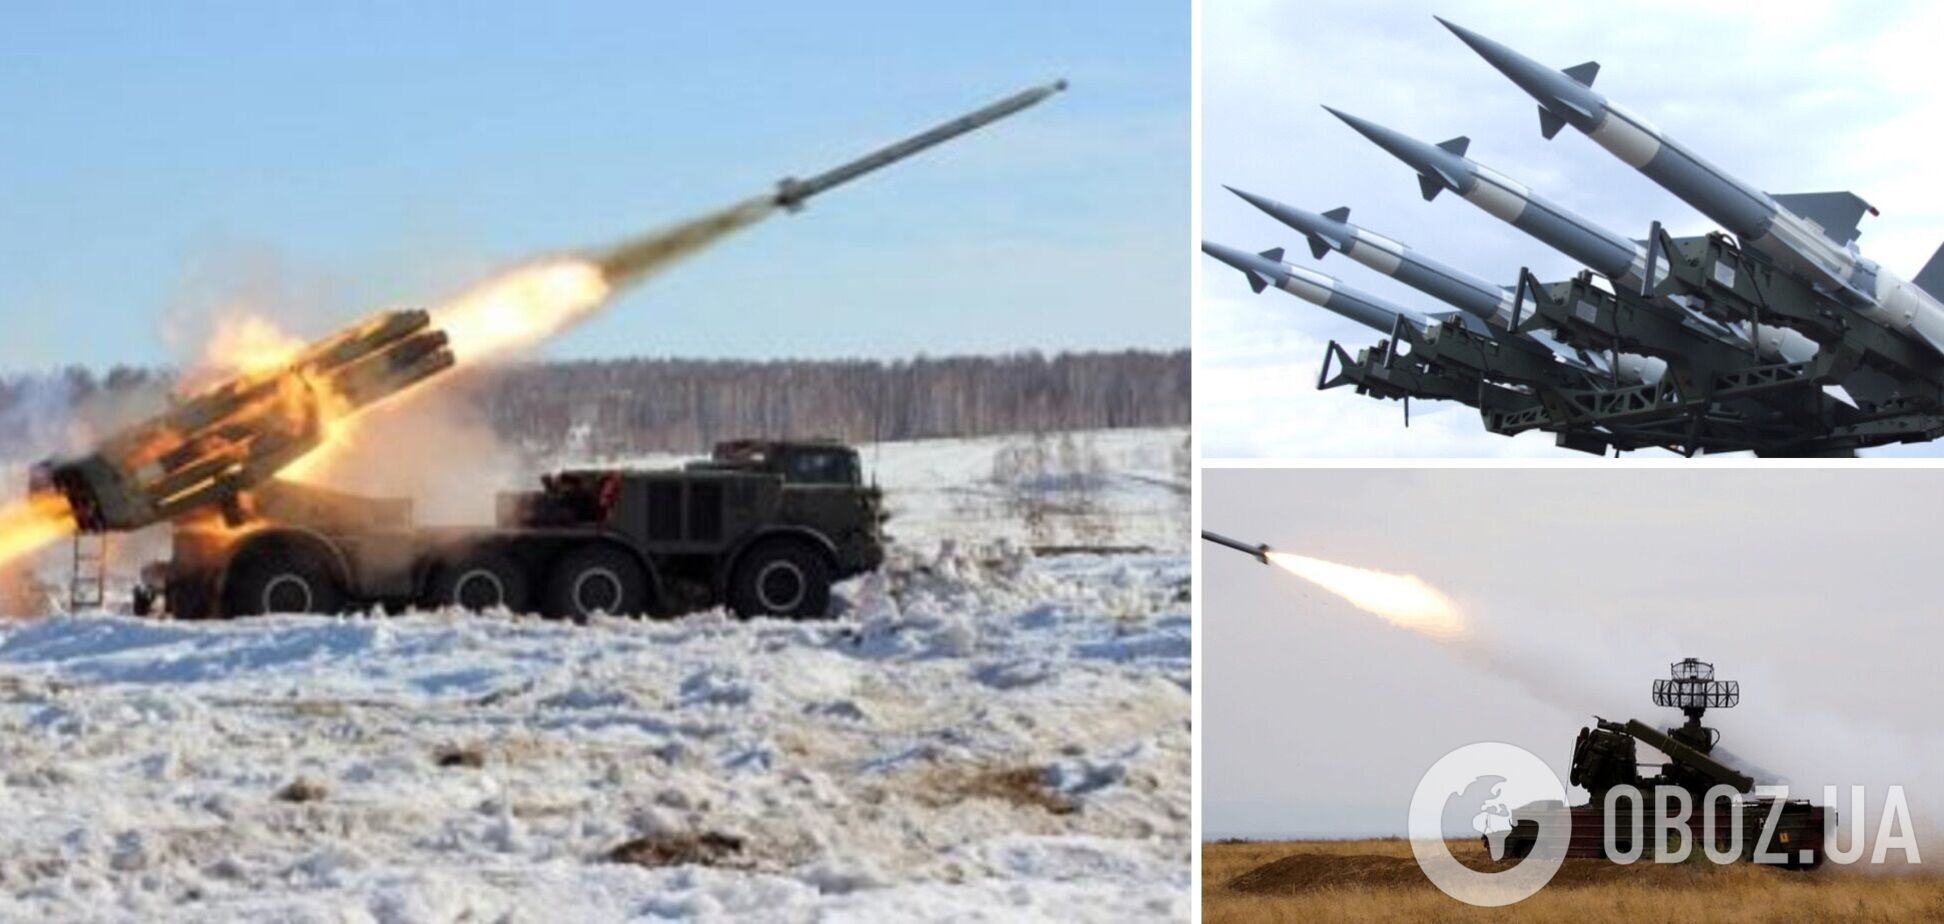 'Була загроза ракетного удару з наземного озброєння': Повітряні сили про масштабну повітряну тривогу вдень